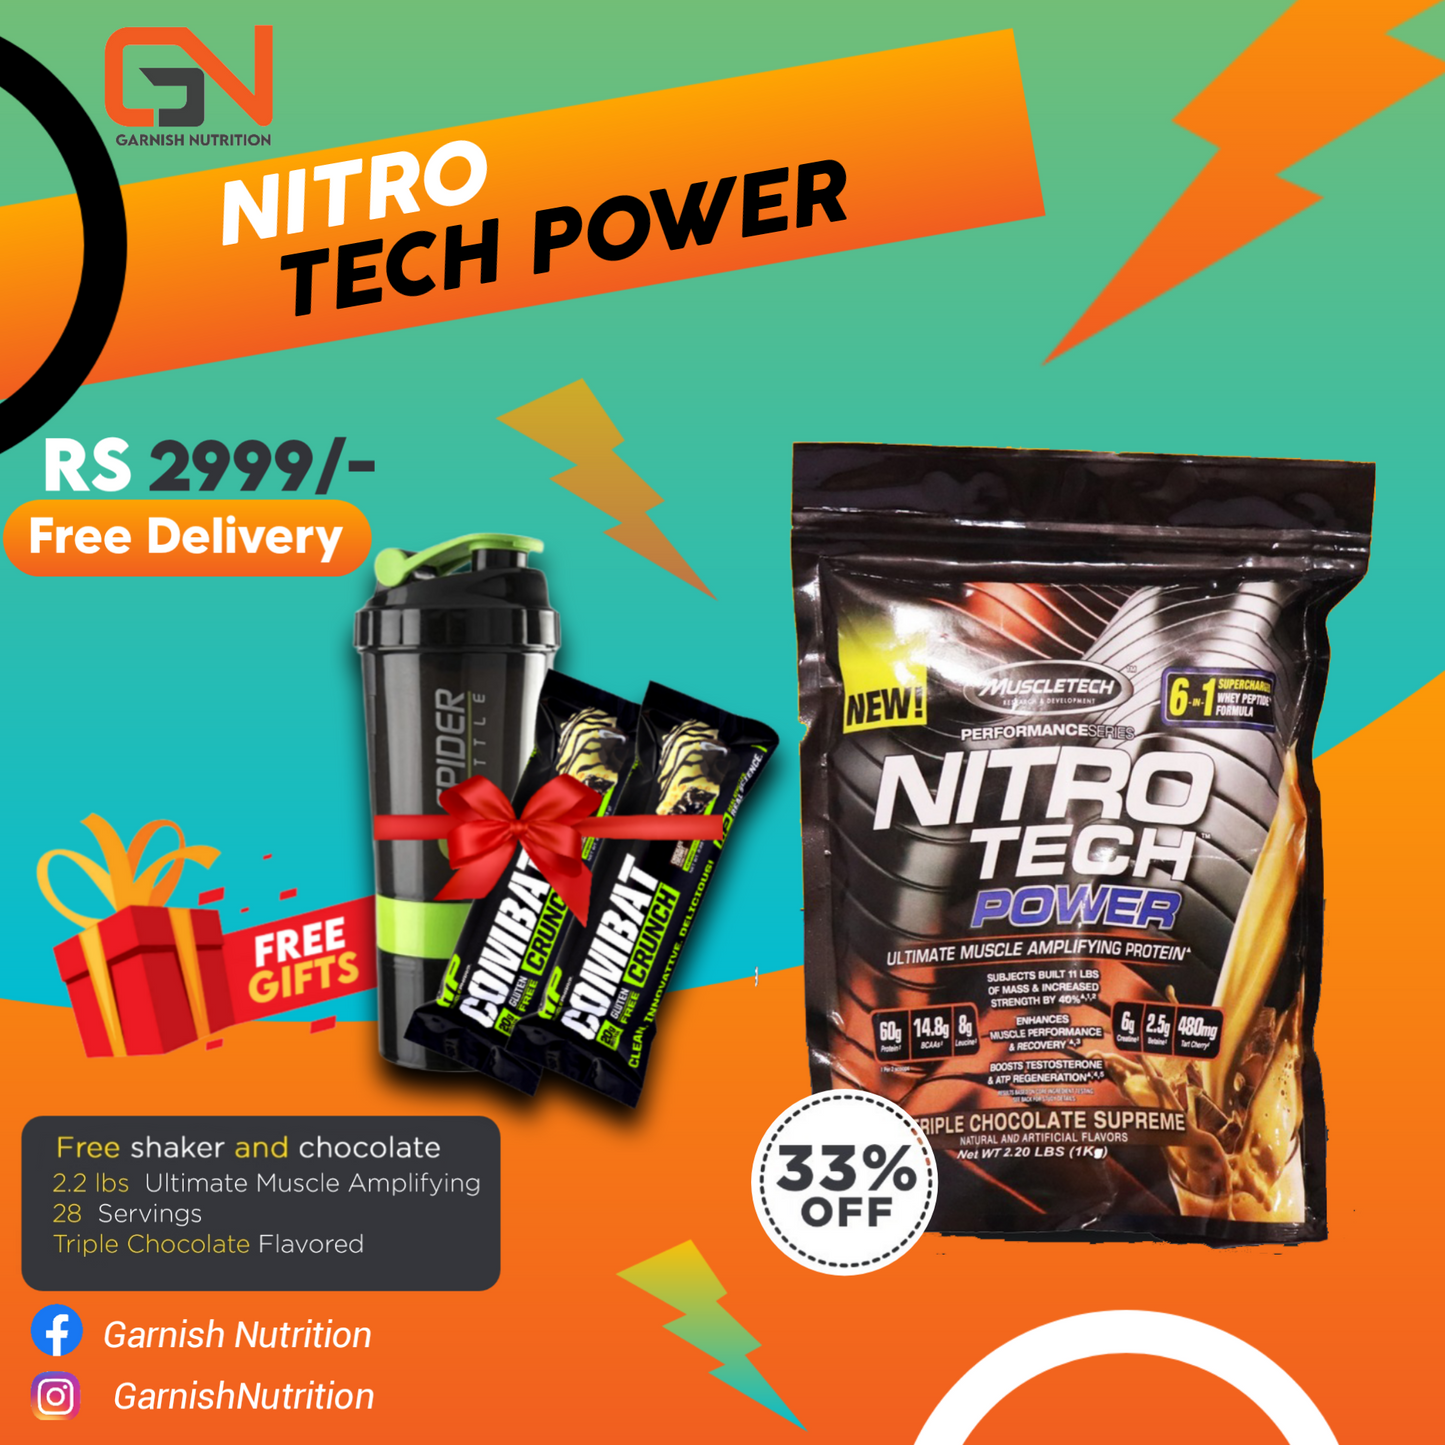 Nitro Tech Power